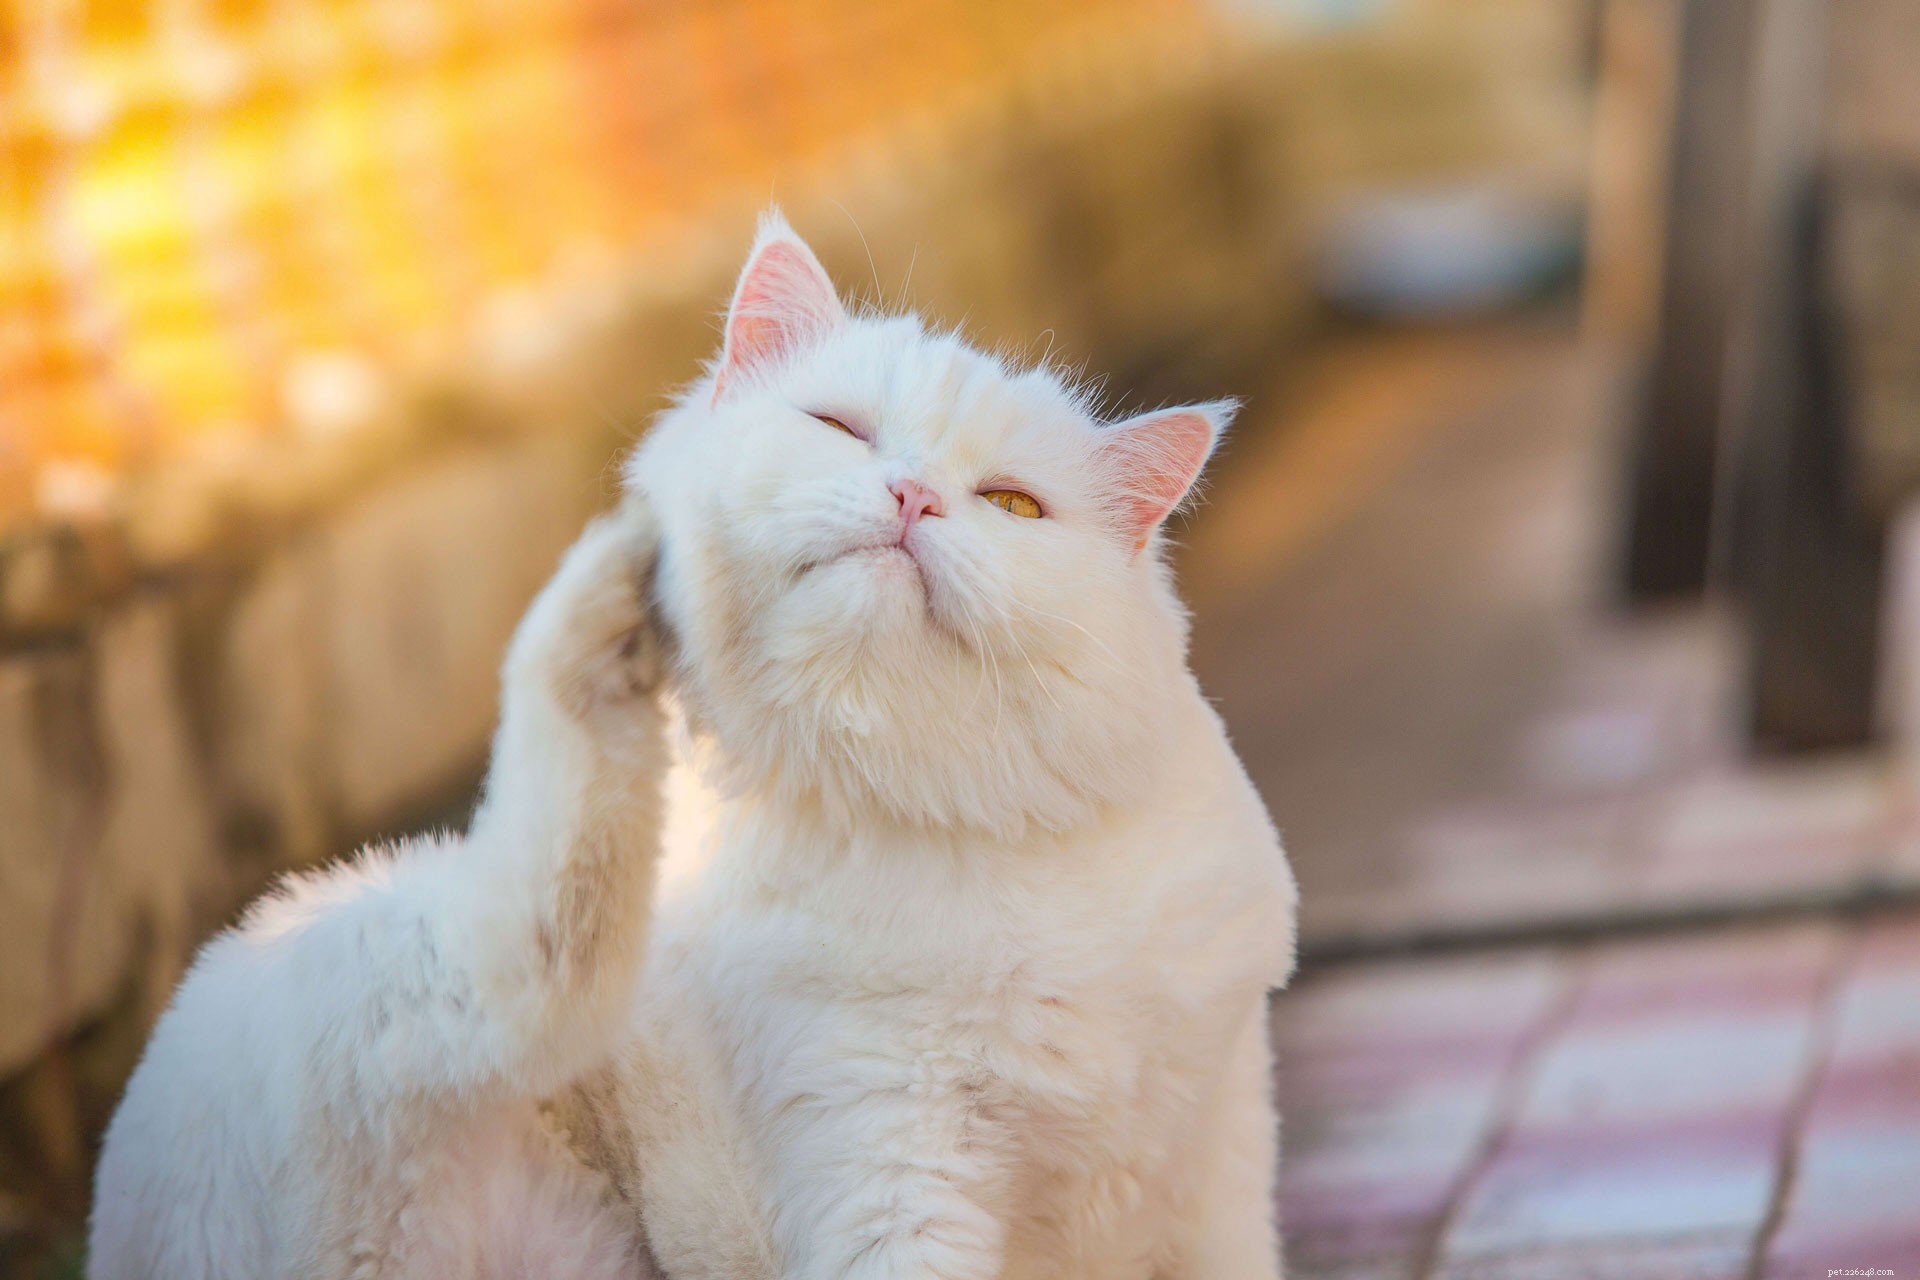 고양이의 귀 진드기를 치료하기 위한 손쉬운 가정 요법